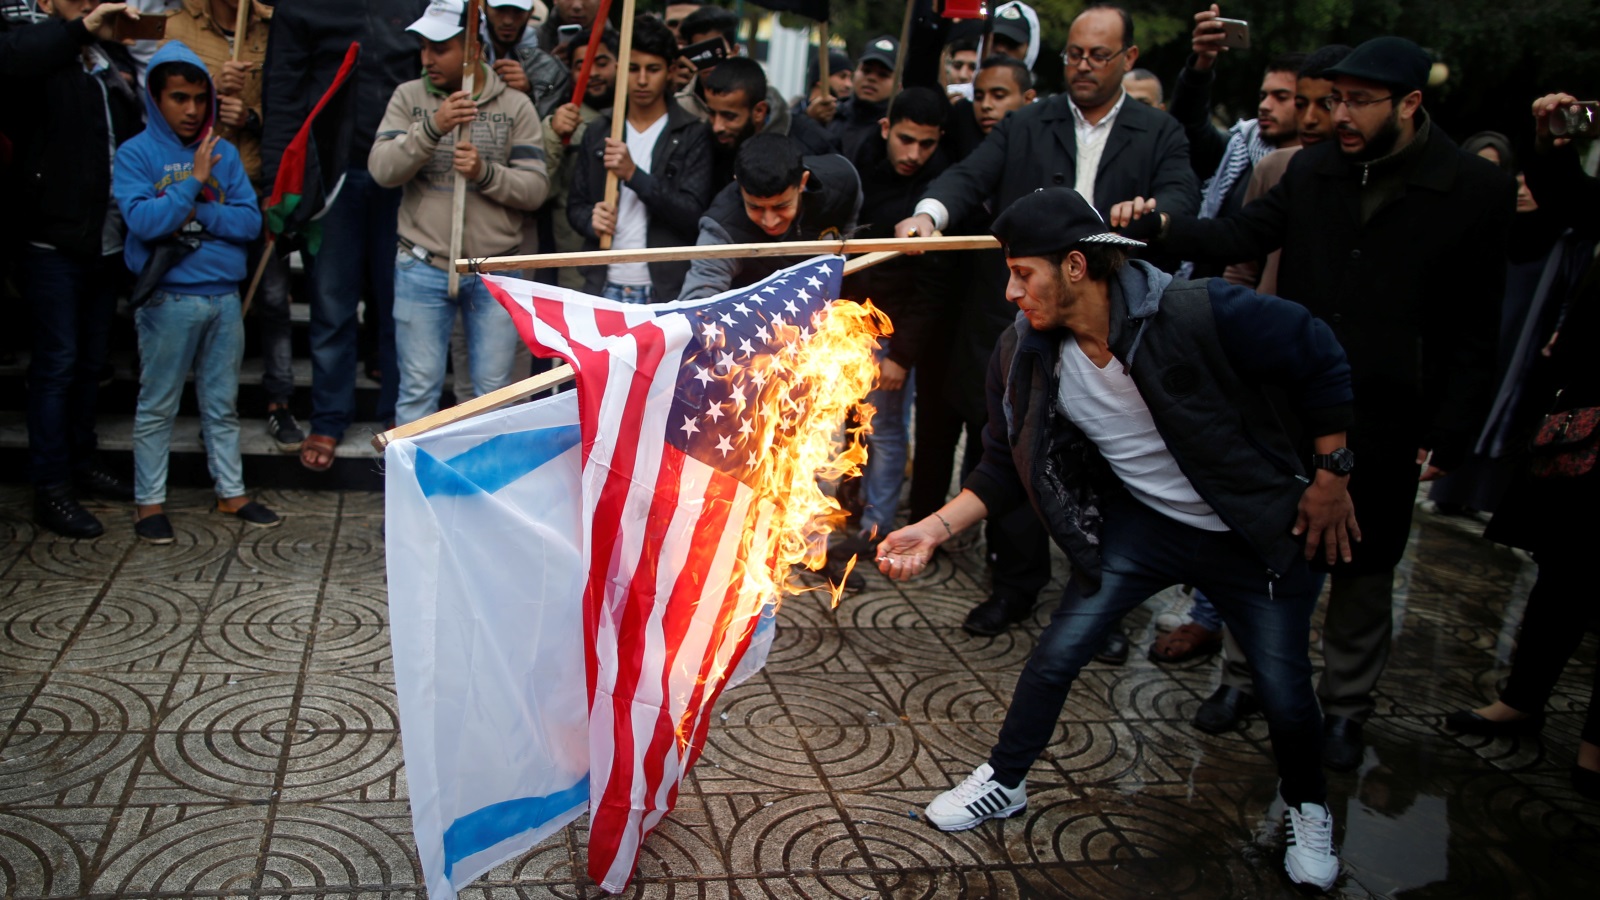 بعض الأمور التي ترحب بها بعض الحكومات في الشرق الأوسط كإحراق الأعلام قد يعد عملاً تحريضاً بالنسبة لقوانين معظم البلدان الأوروبية